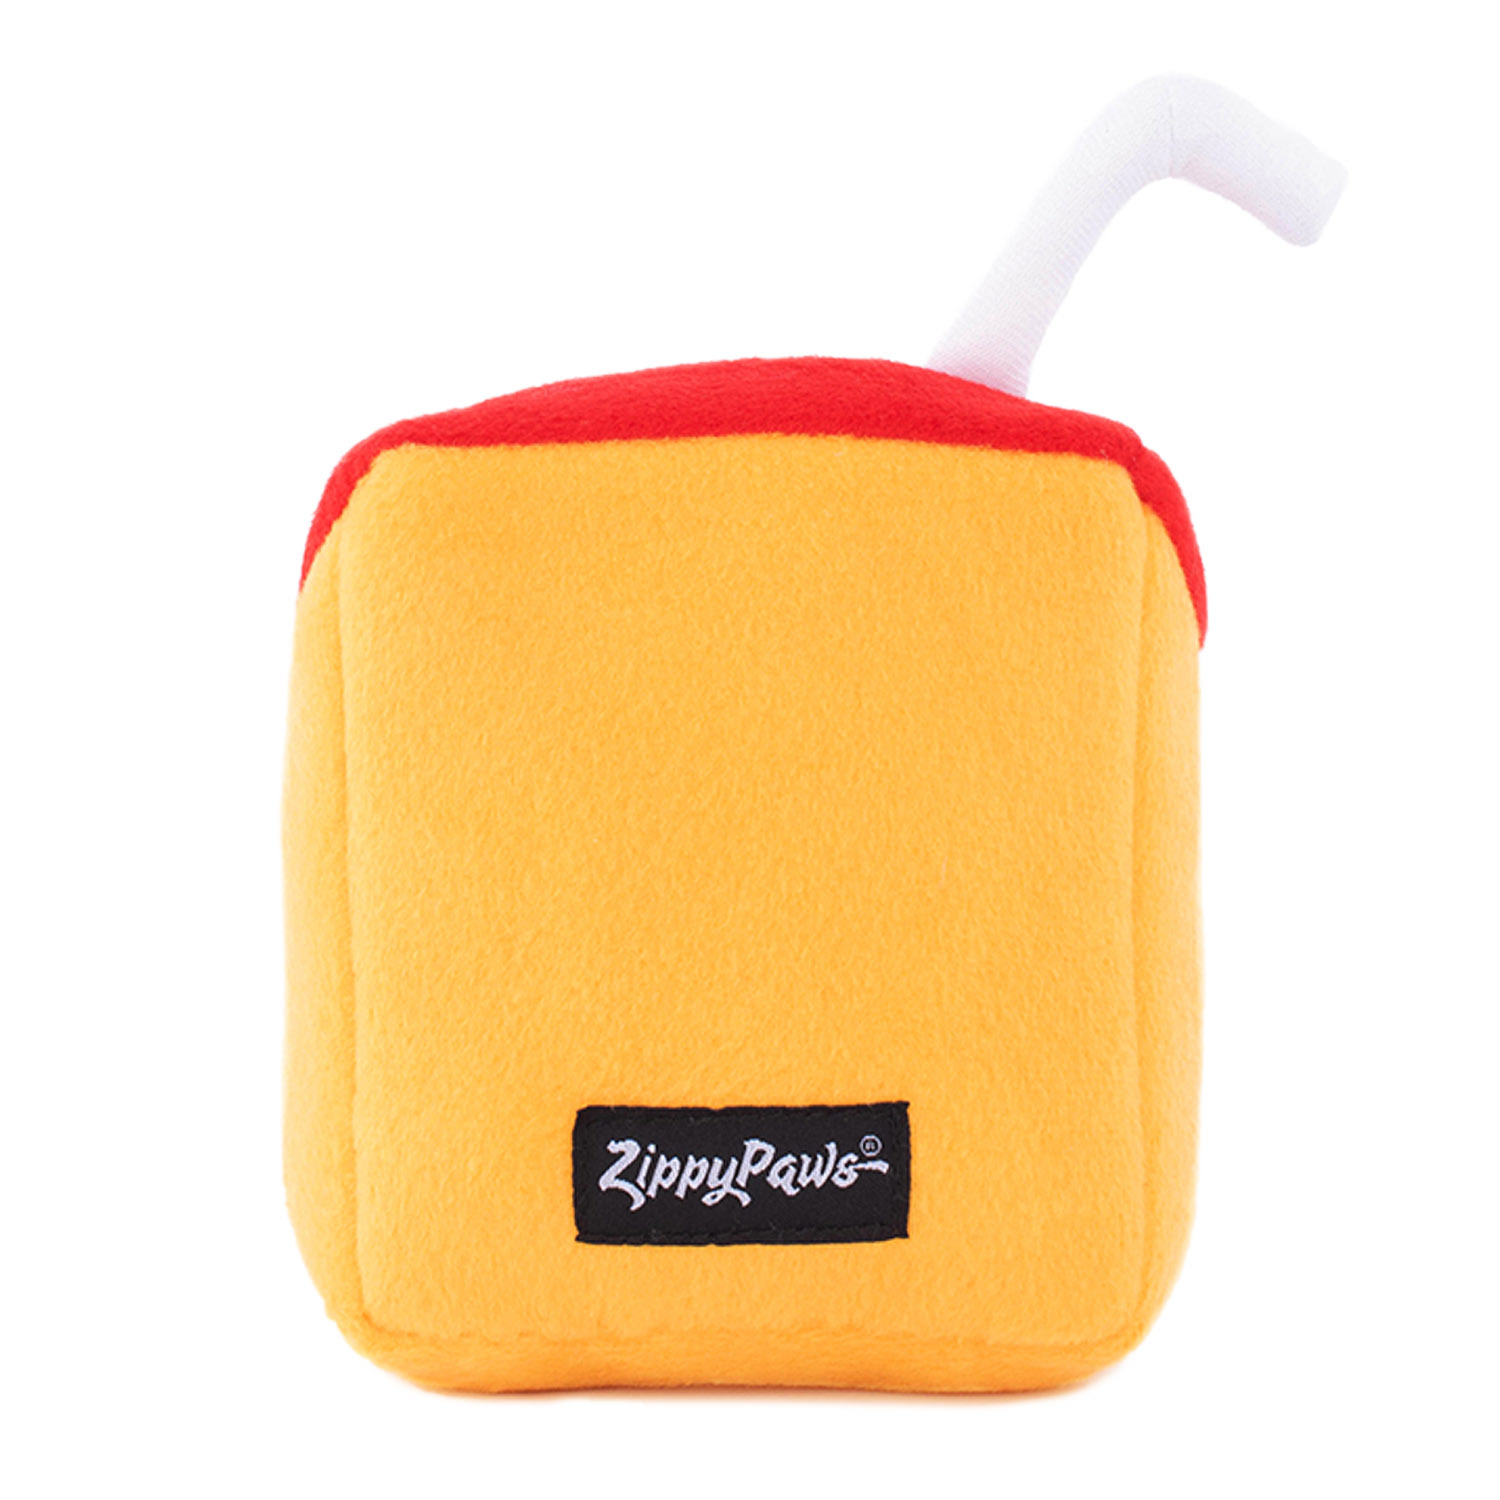 Zippy Paws NomNomz Plush Squeaker Dog Toys - Juicebox image 0